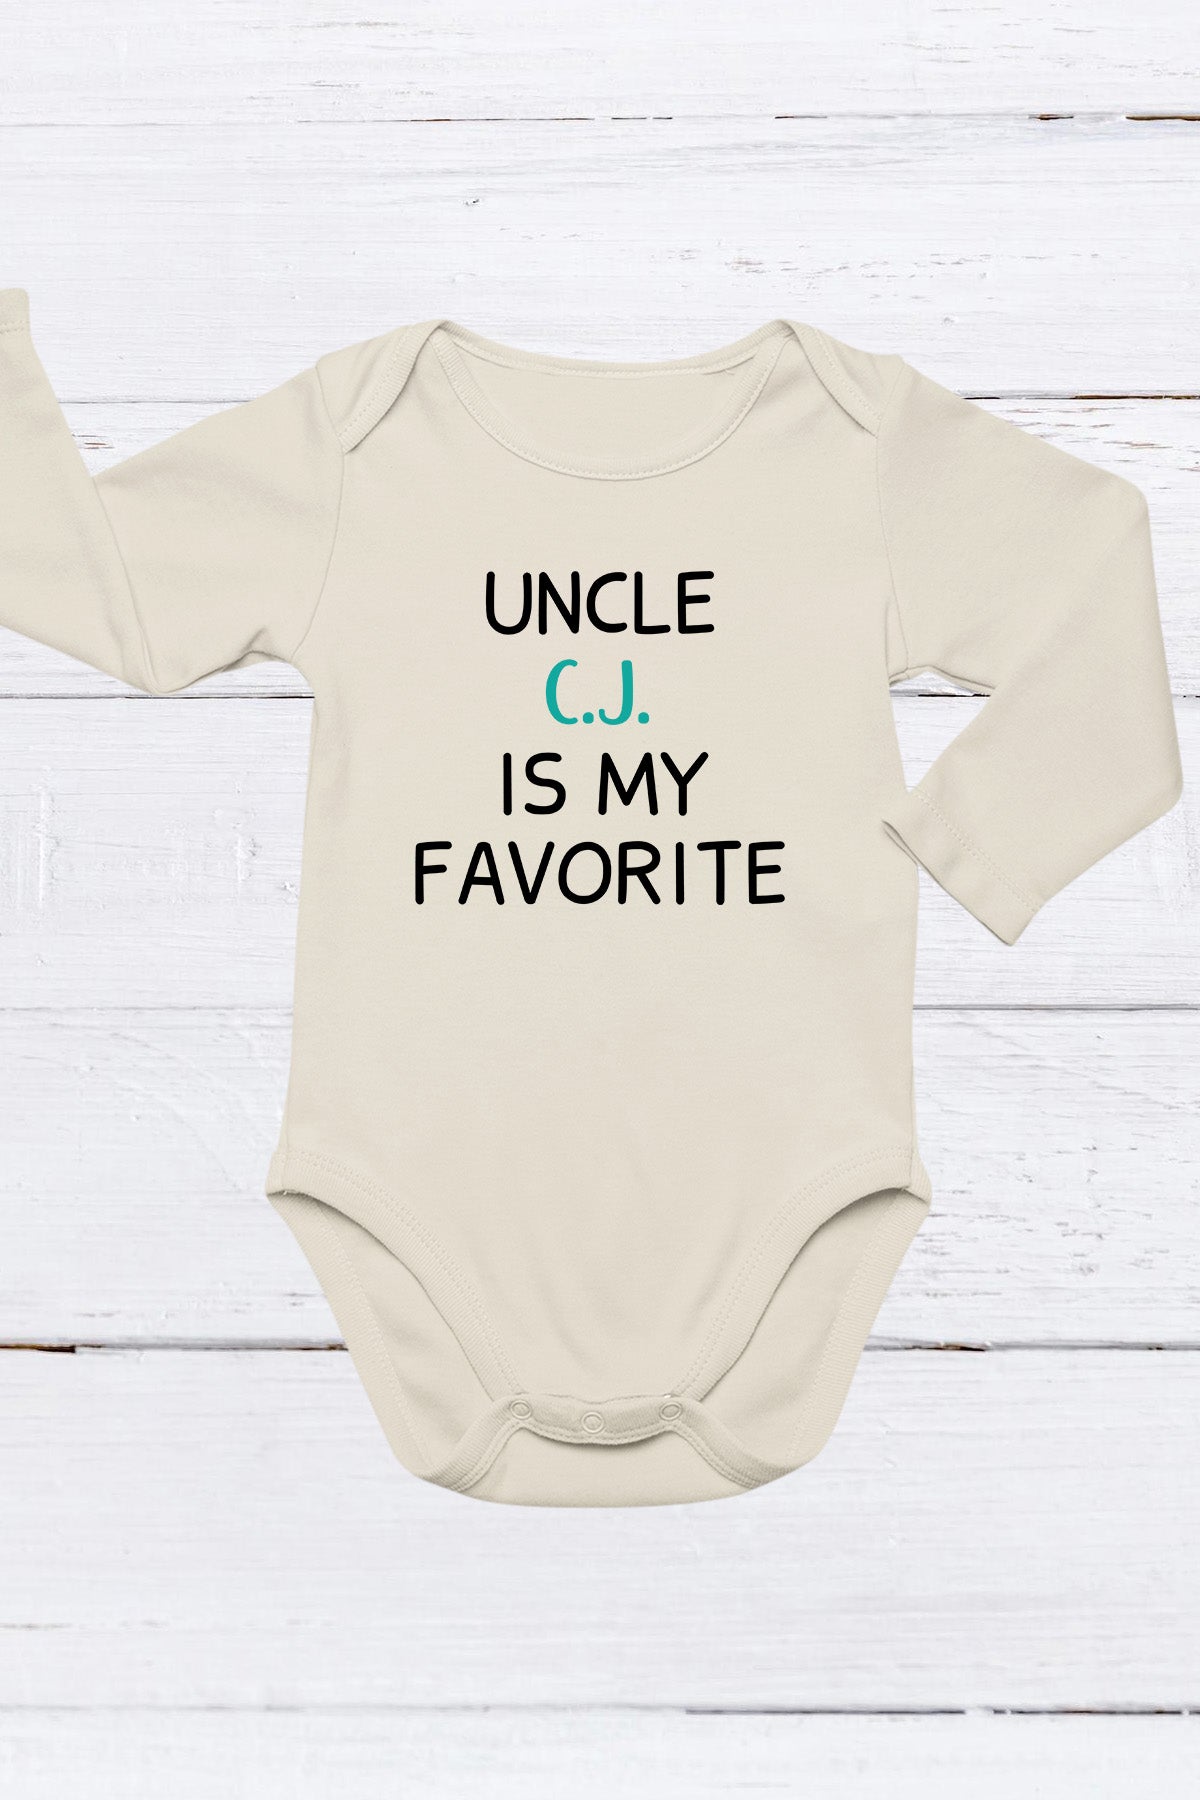 Custom Name Uncle is My Favorite Baby Bodysuit